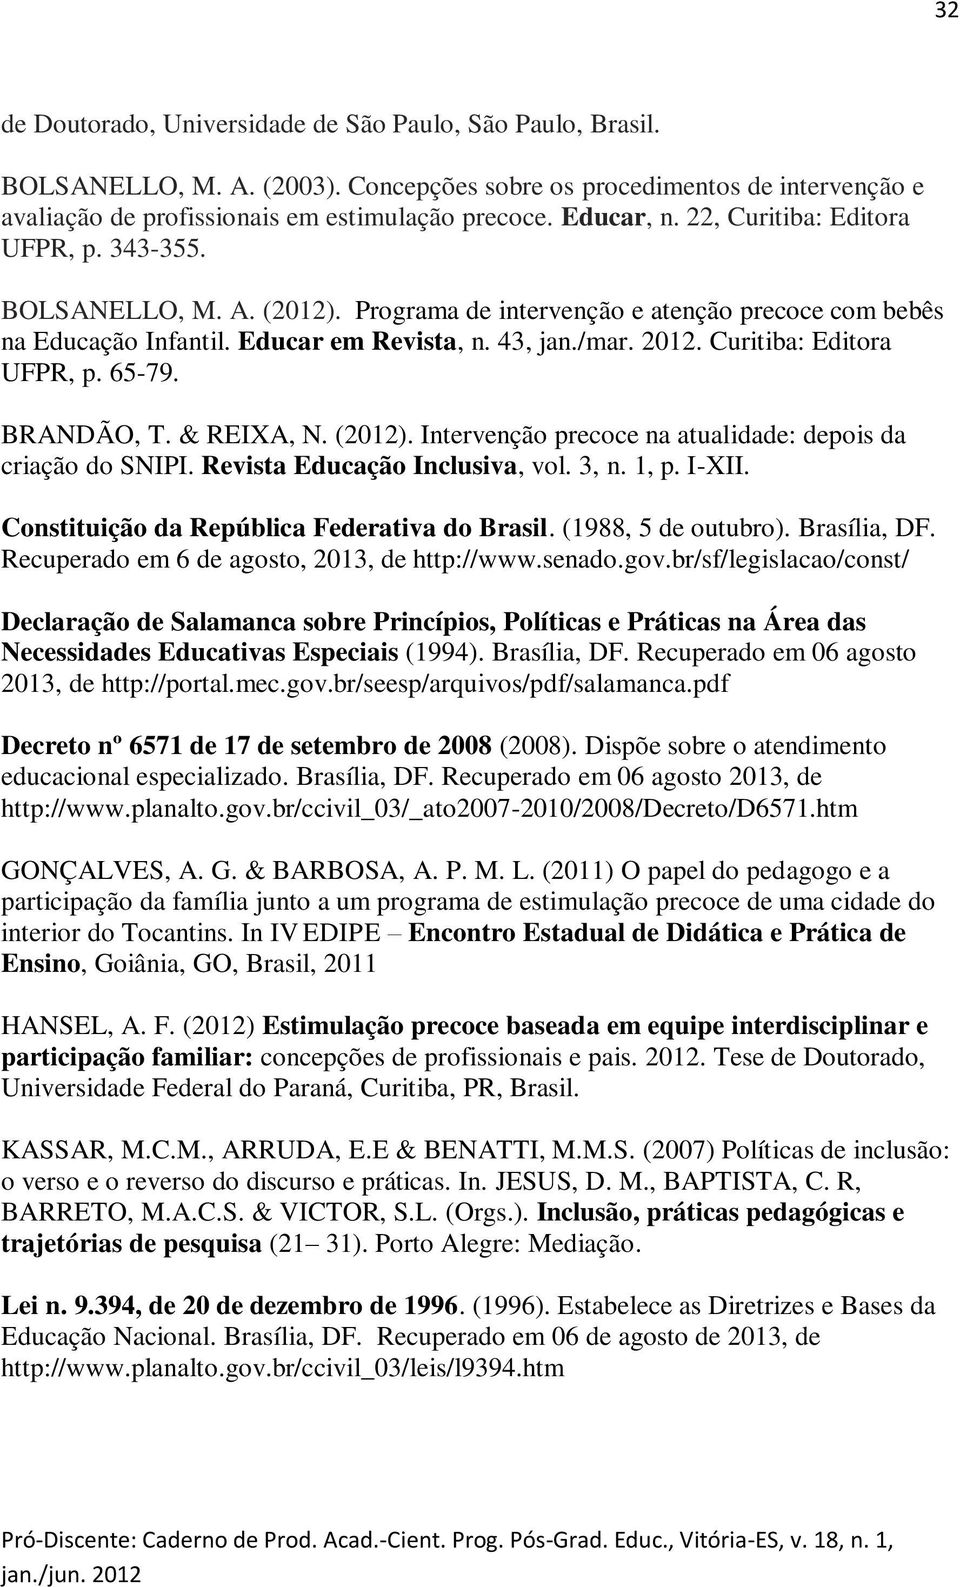 Curitiba: Editora UFPR, p. 65-79. BRANDÃO, T. & REIXA, N. (2012). Intervenção precoce na atualidade: depois da criação do SNIPI. Revista Educação Inclusiva, vol. 3, n. 1, p. I-XII.